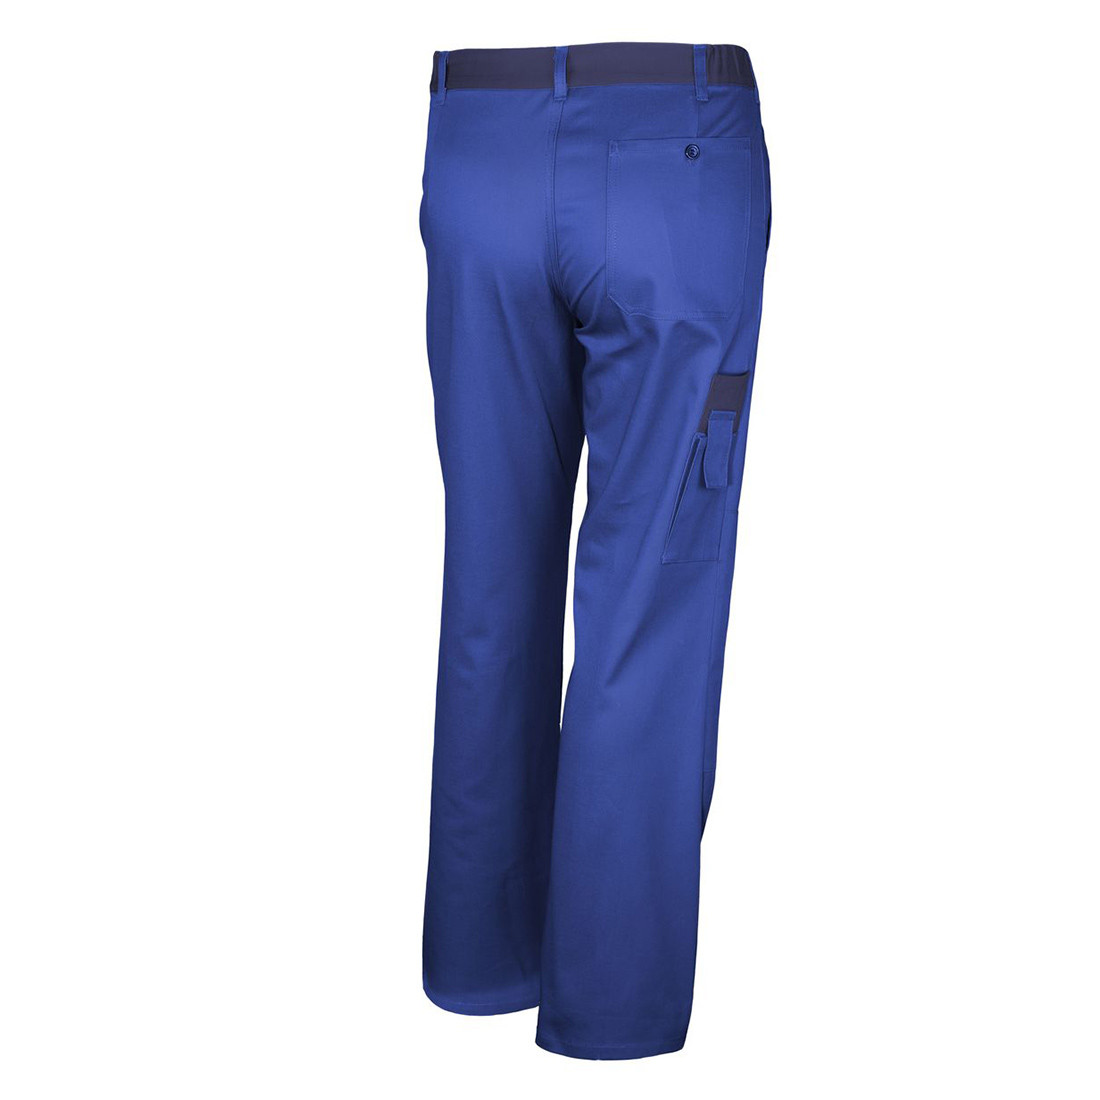 Pantaloni de lucru BASIC BICOLOR - Imbracaminte de protectie